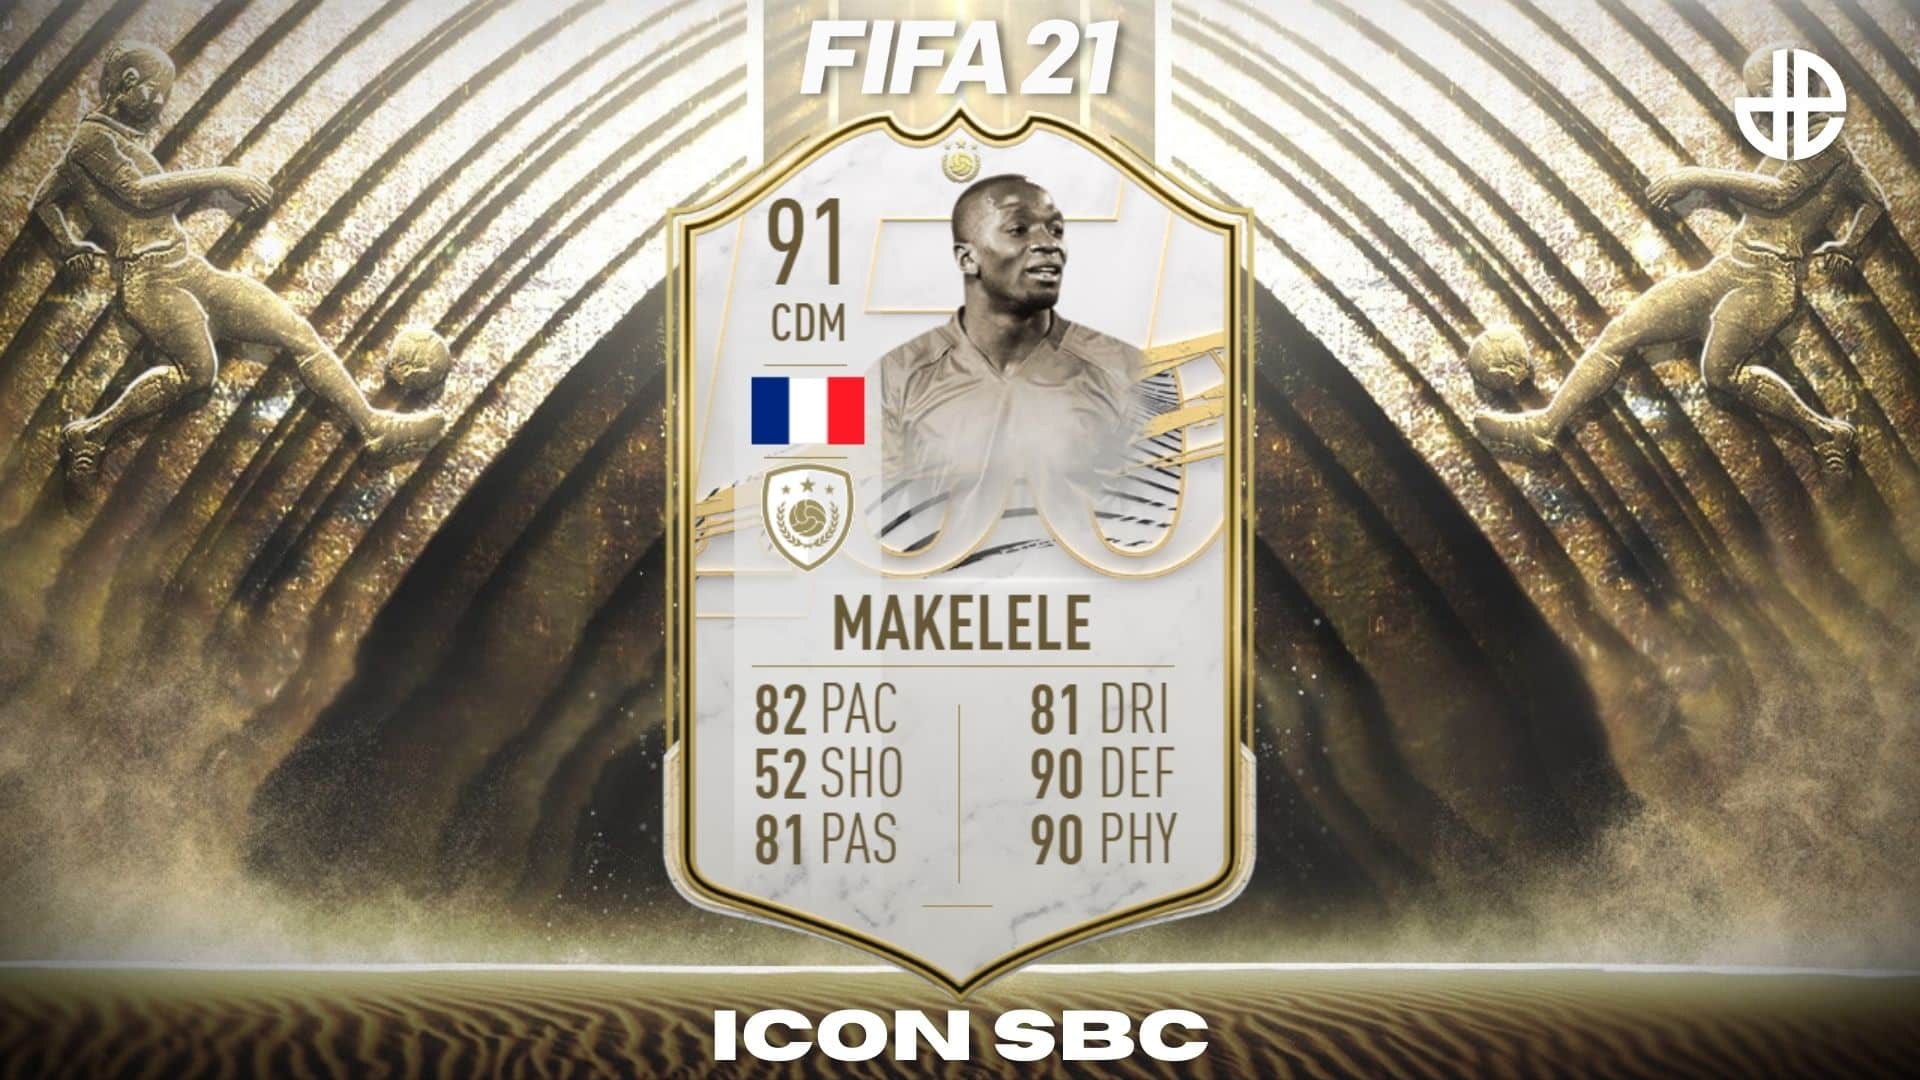 FIFA 21 Claude Makelele SBC